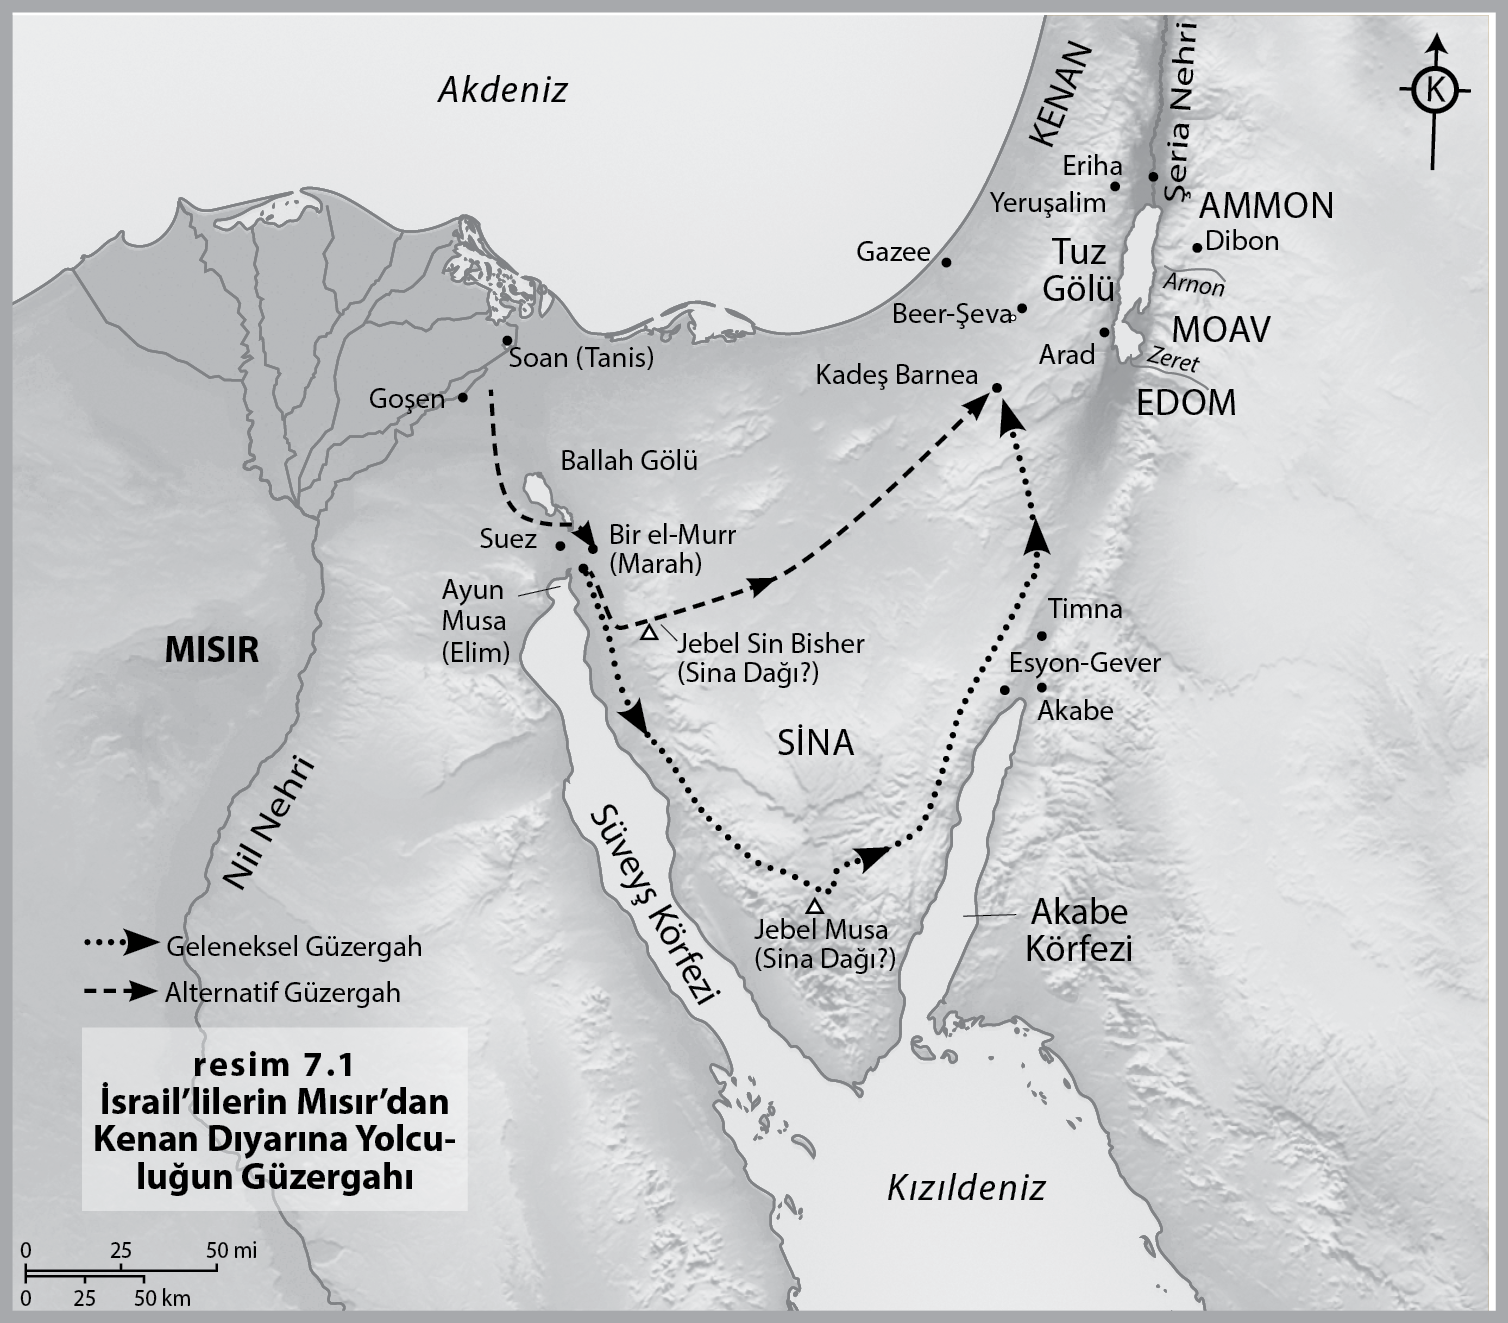 İsrail'lilerin Mısır'dan Kenan Dıyarına Yolculuğun Güzergahı